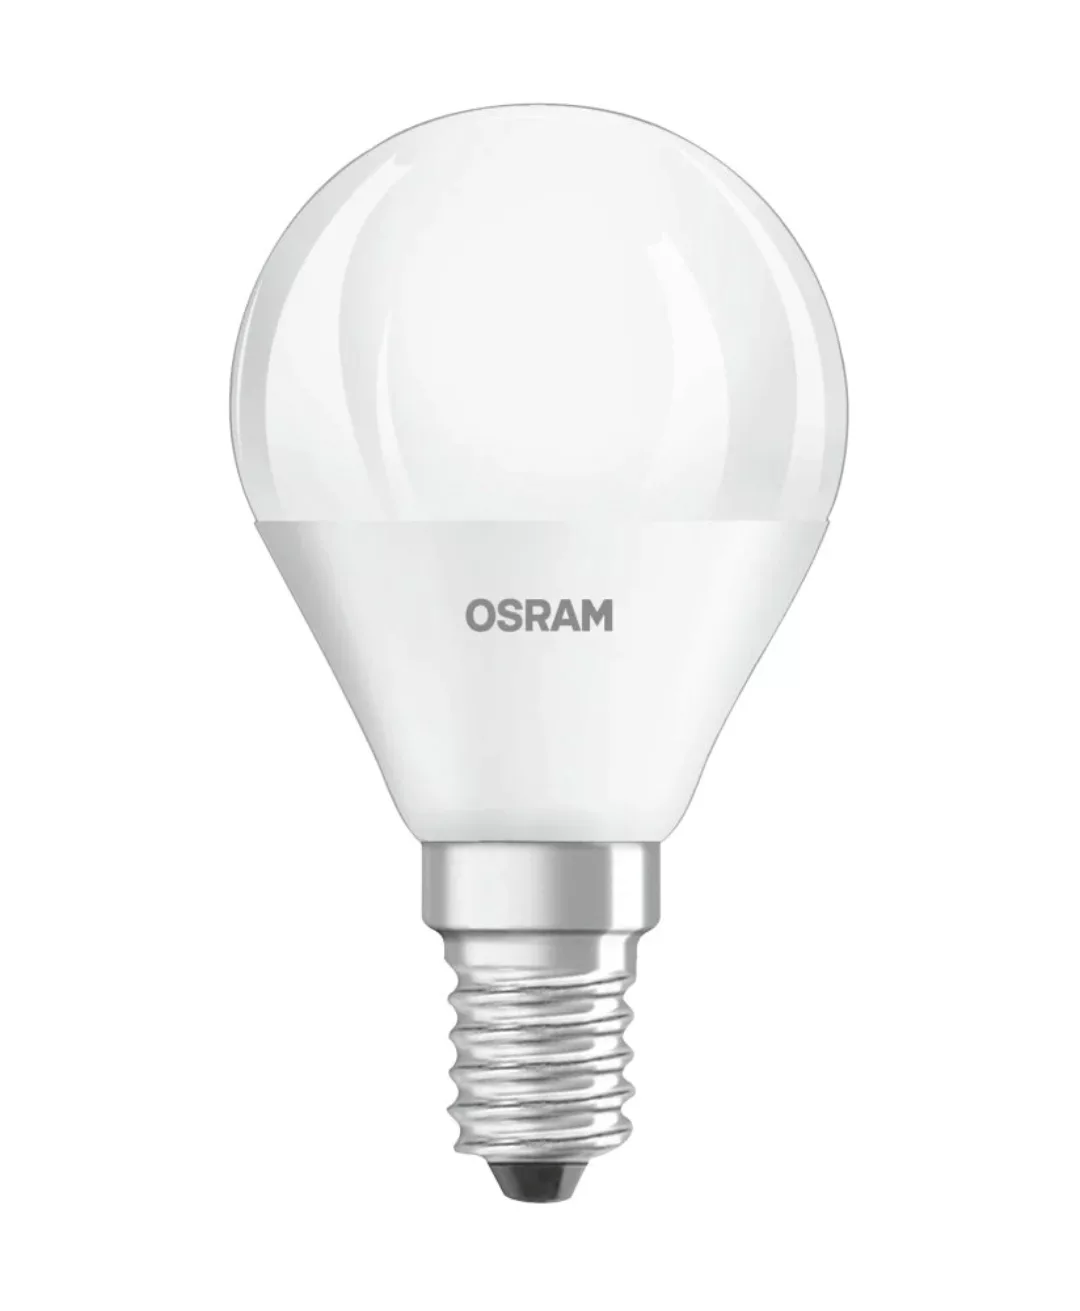 Bellalux LED-Leuchtmittel E14 Tropfenform 4,9 W 470 lm 8,2 x 4,5 cm (H x Ø) günstig online kaufen